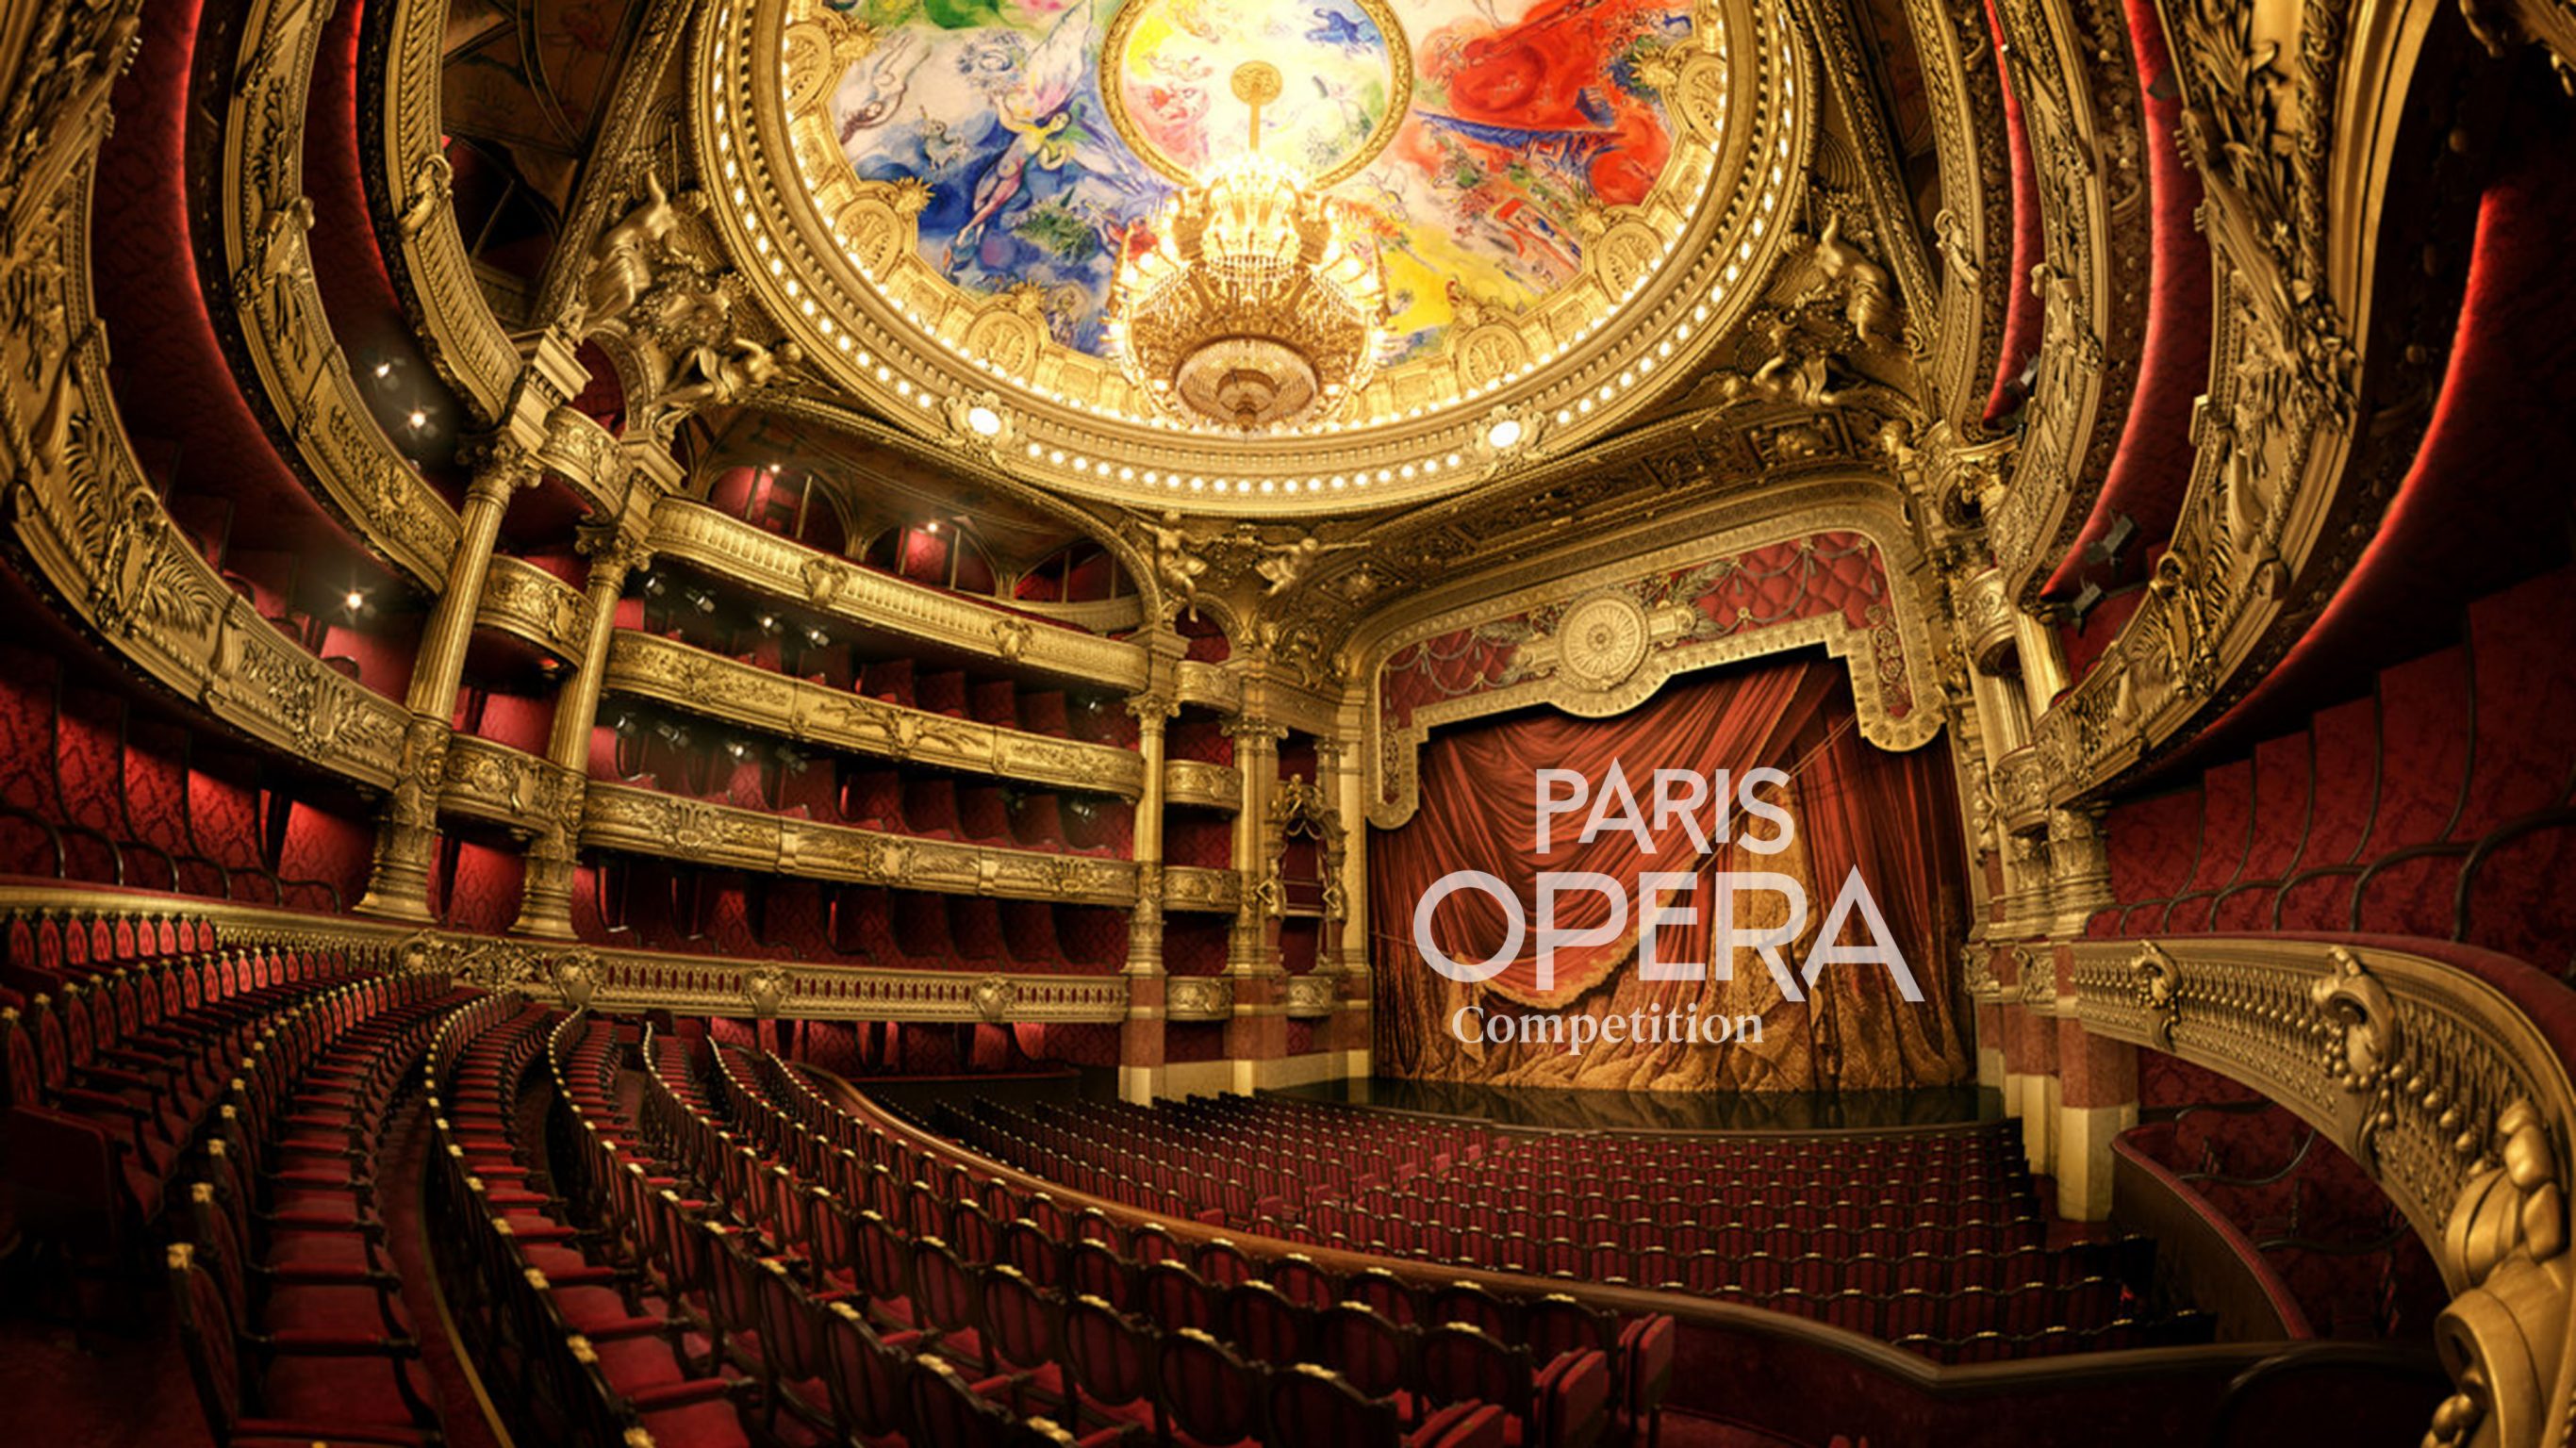 París Opera Competition DAS Branding